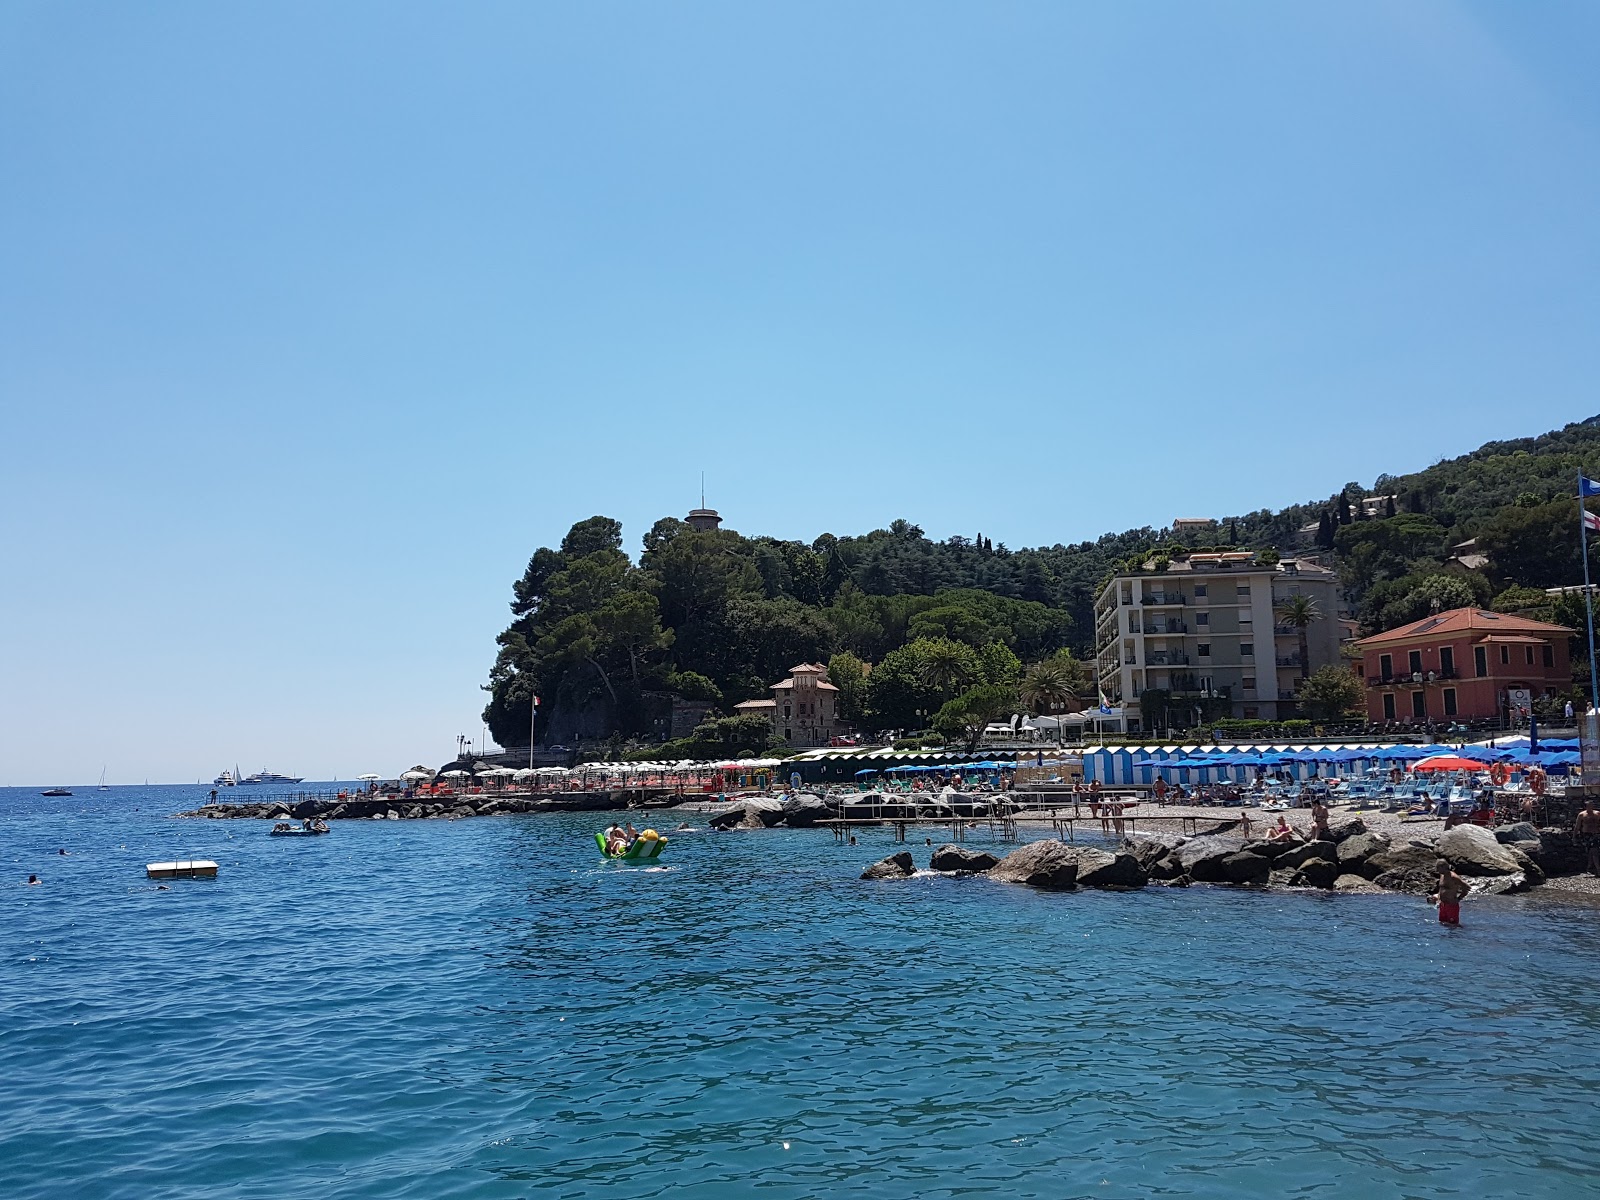 Foto af Spiaggia Santa Margherita Ligure og bosættelsen